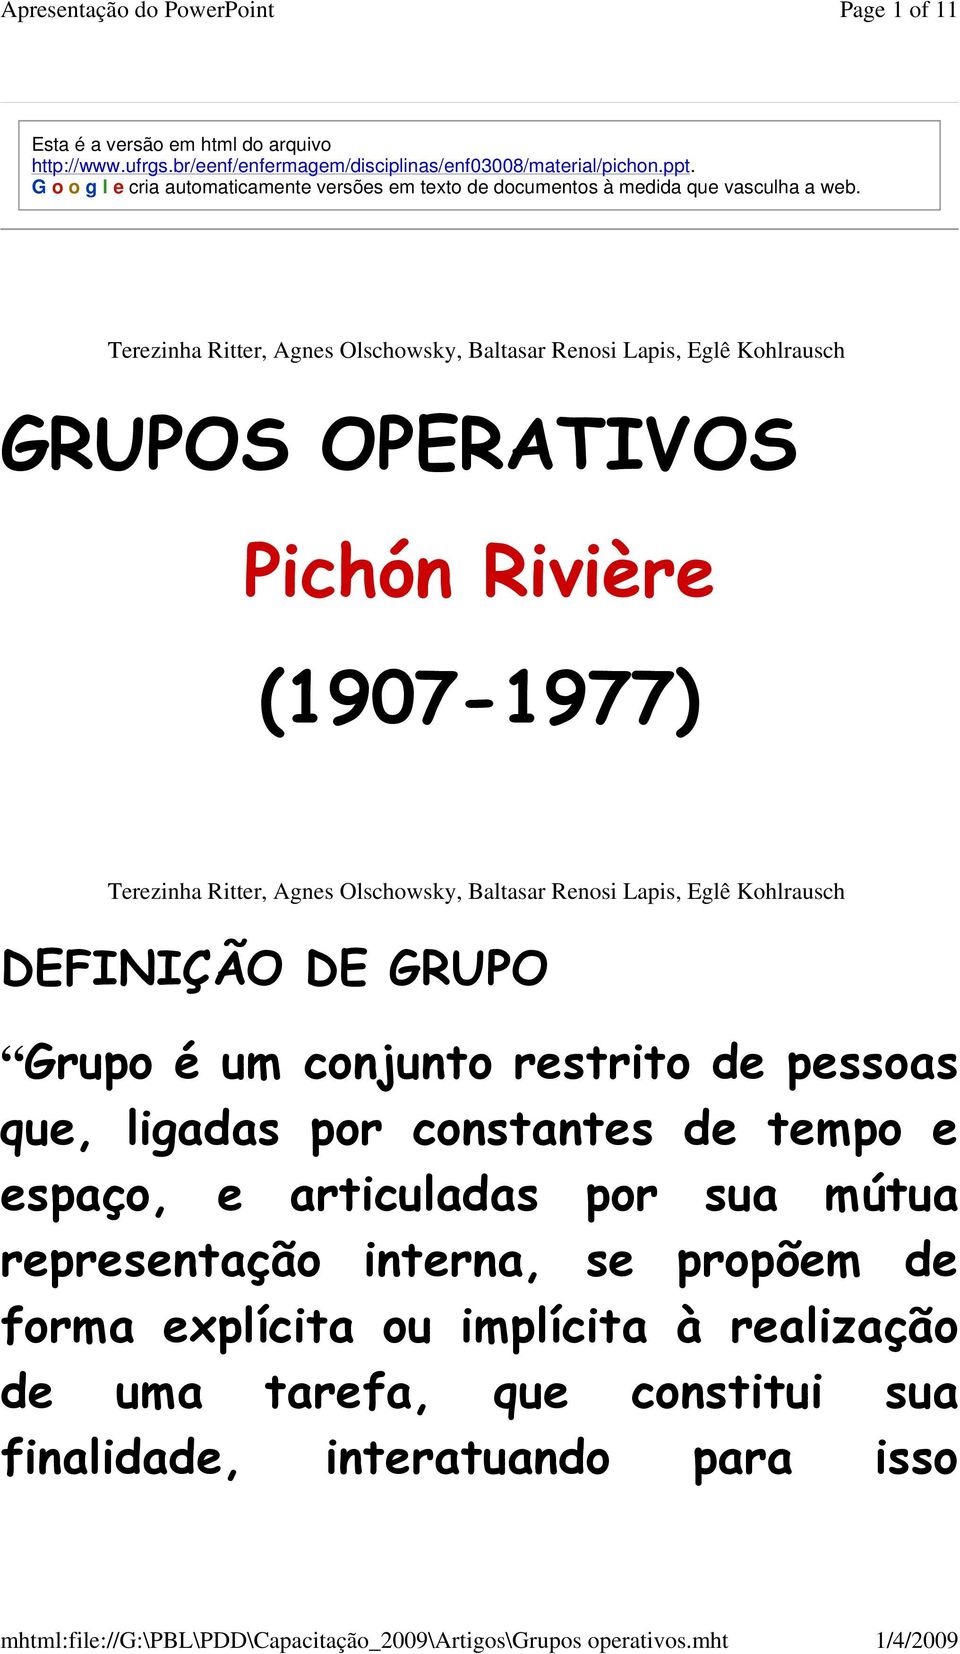 GRUPOS OPERATIVOS Pichón Rivière (1907-1977) DEFINIÇÃO DE GRUPO Grupo é um conjunto restrito de pessoas que, ligadas por constantes de